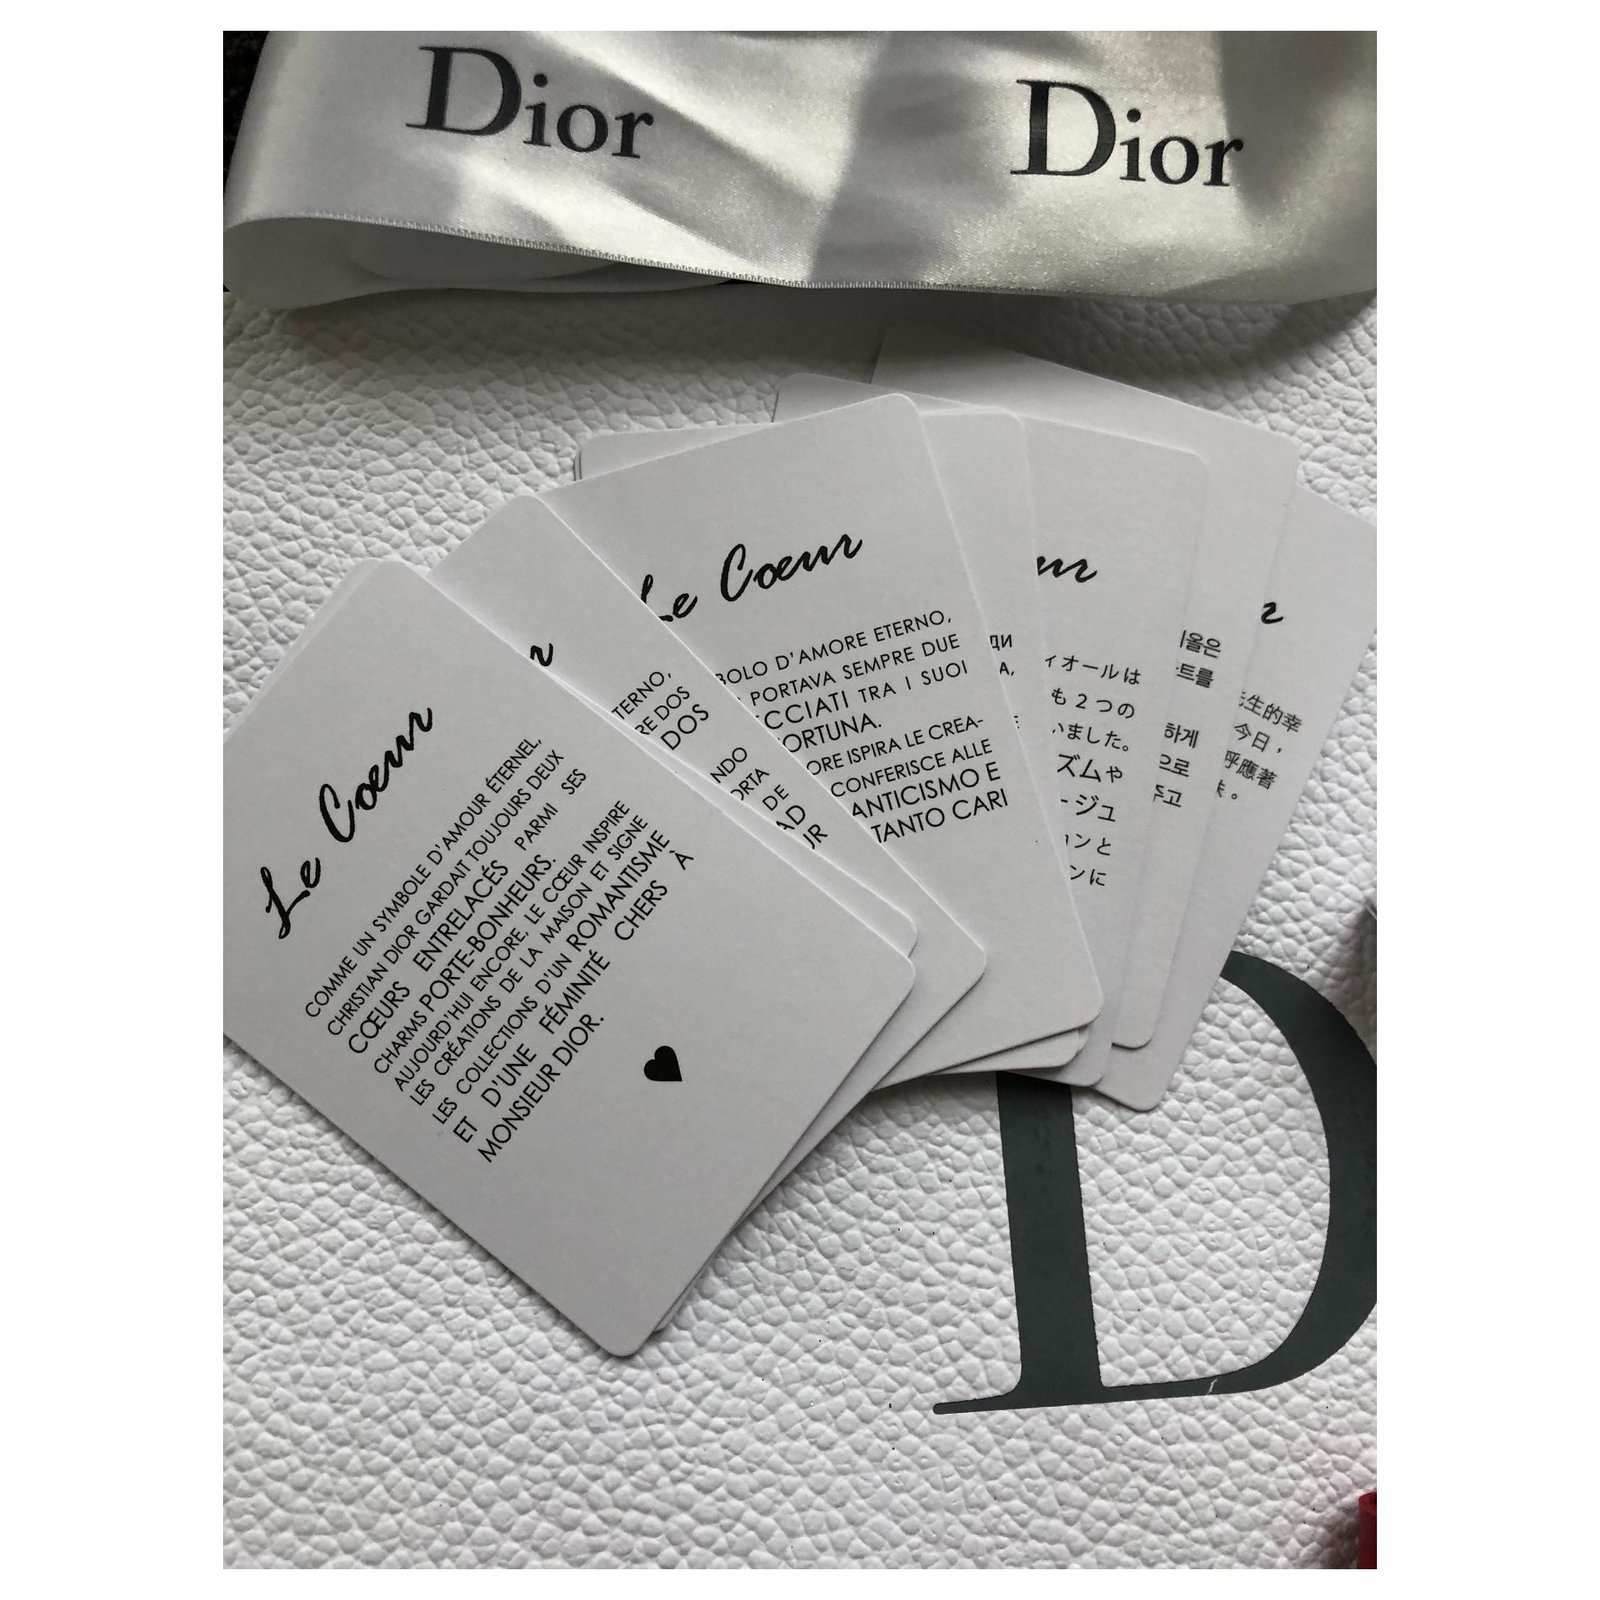 Membership dior vip Dior Diva